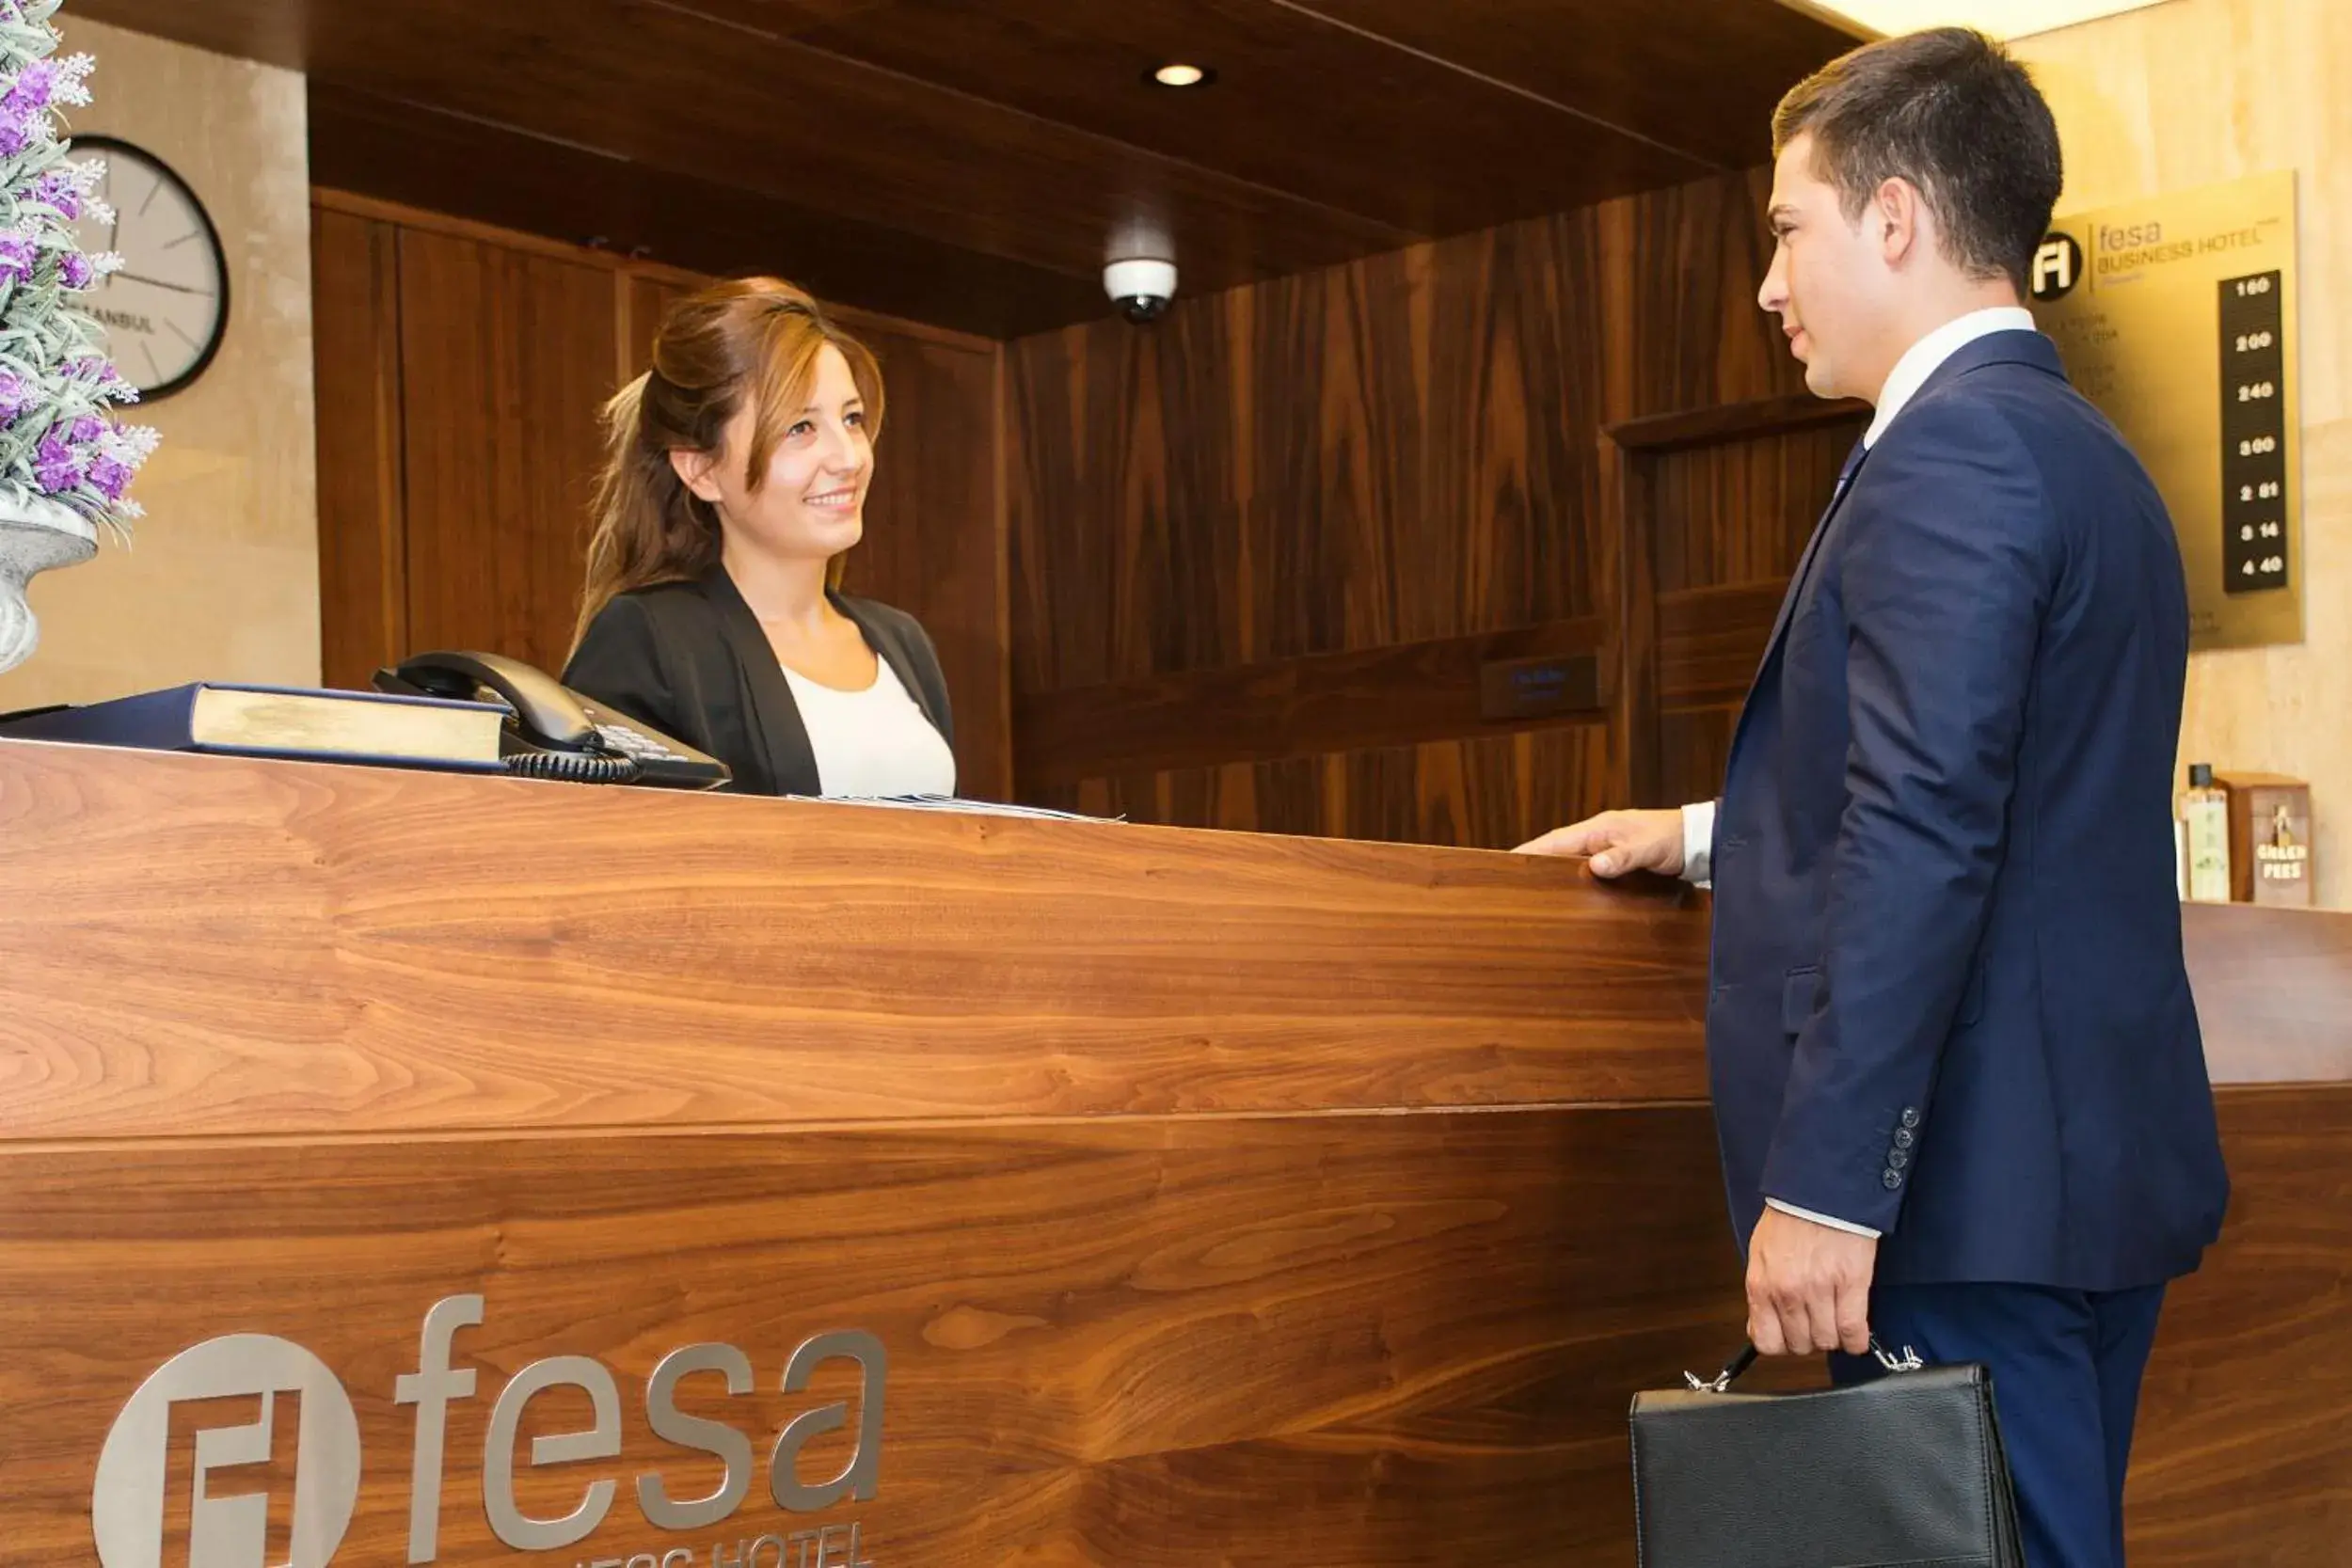 Staff, Lobby/Reception in Fesa Business Hotel